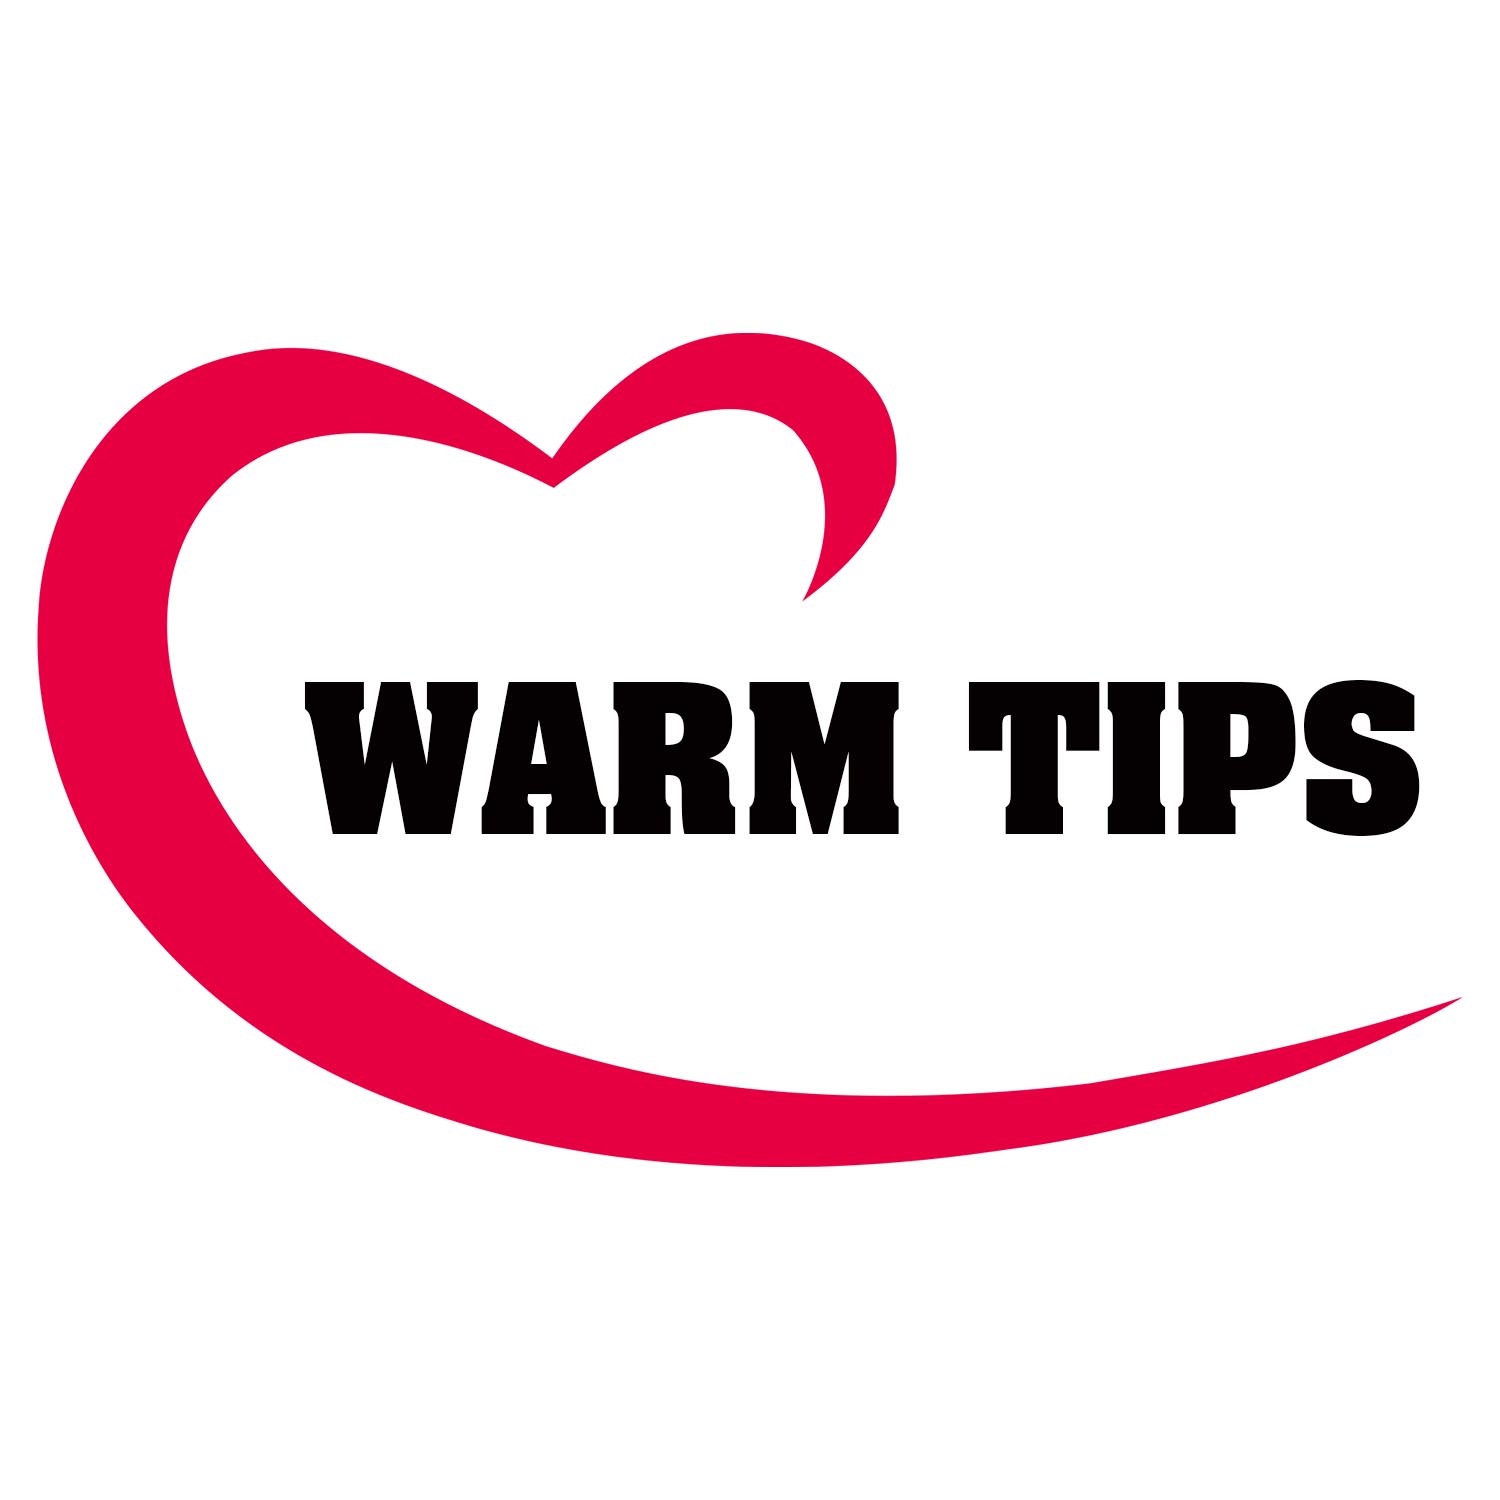 Warm tips